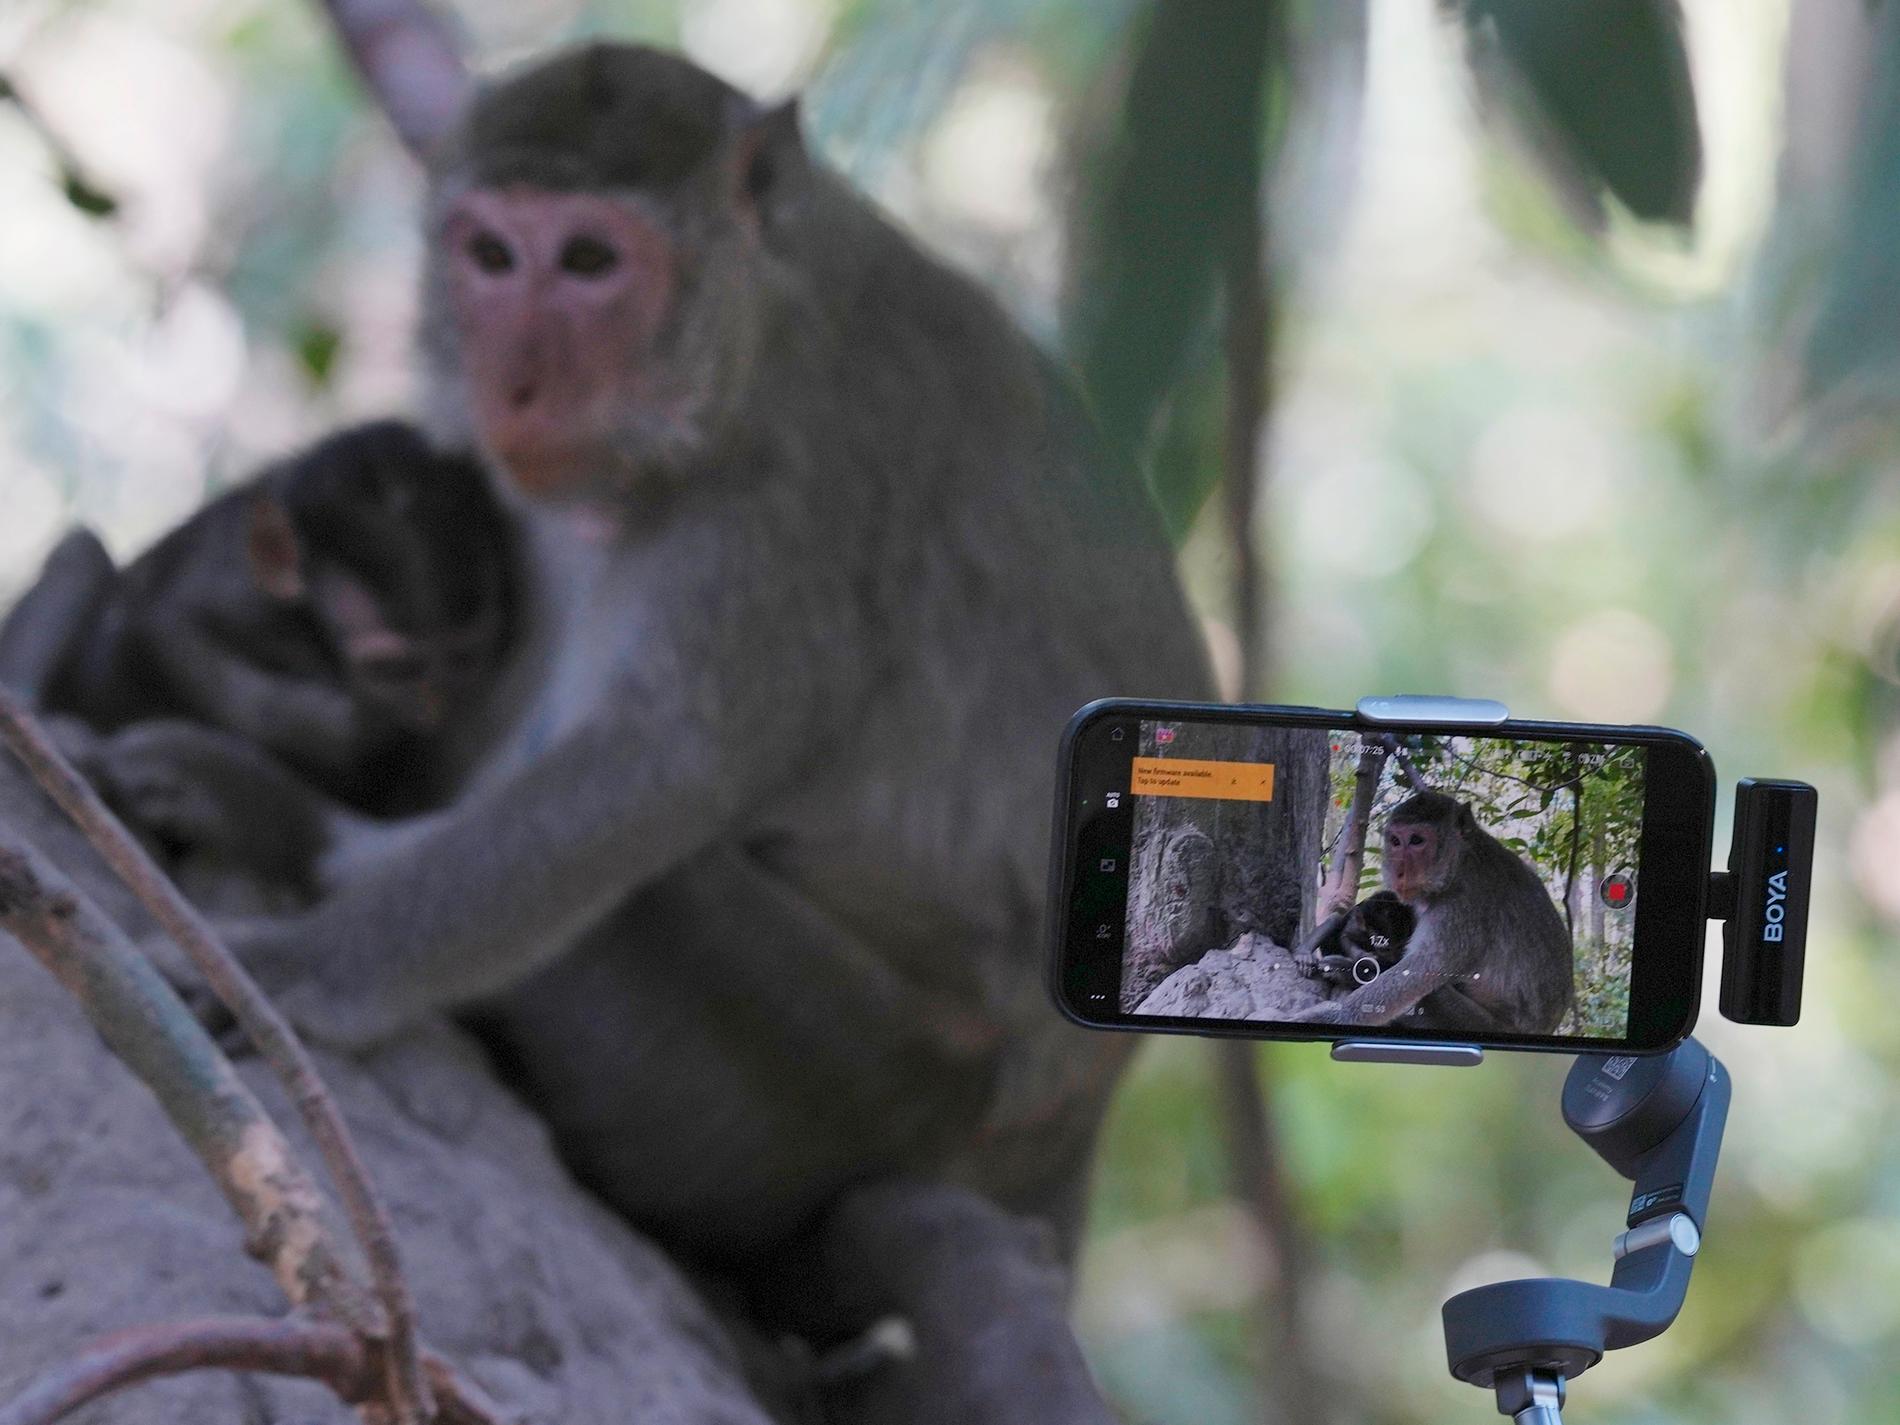 Influerare hetsar apor – för klick på nätet